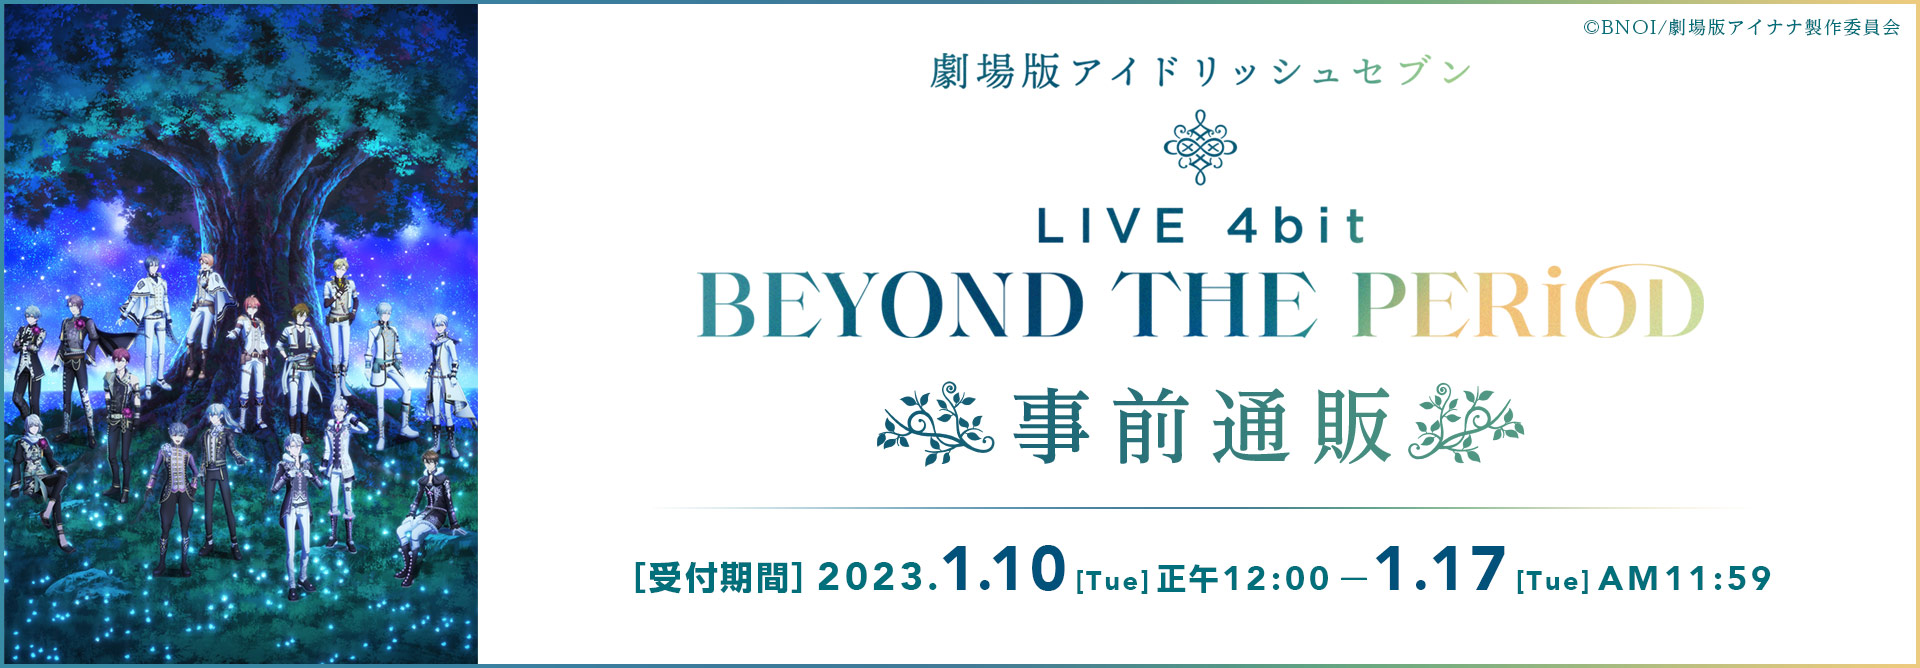 『劇場版アイドリッシュセブン LIVE 4bit BEYOND THE PERiOD』事前通販